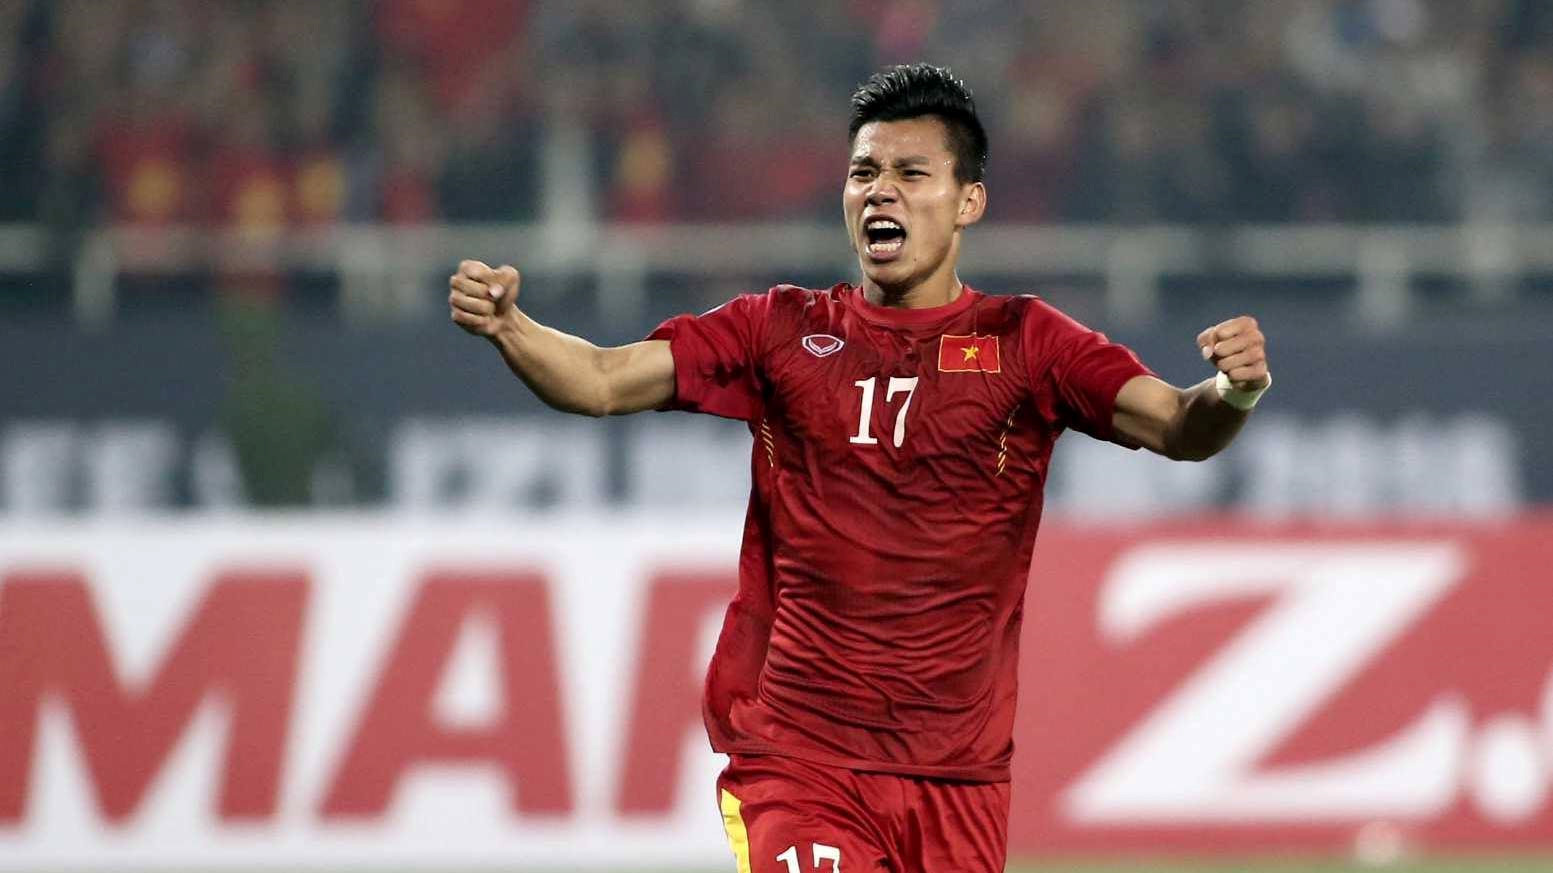 Tiết lộ bất ngờ: Hậu vệ Văn Thanh vẫn có thể thi đấu tại AFF Cup 2018, nhưng…